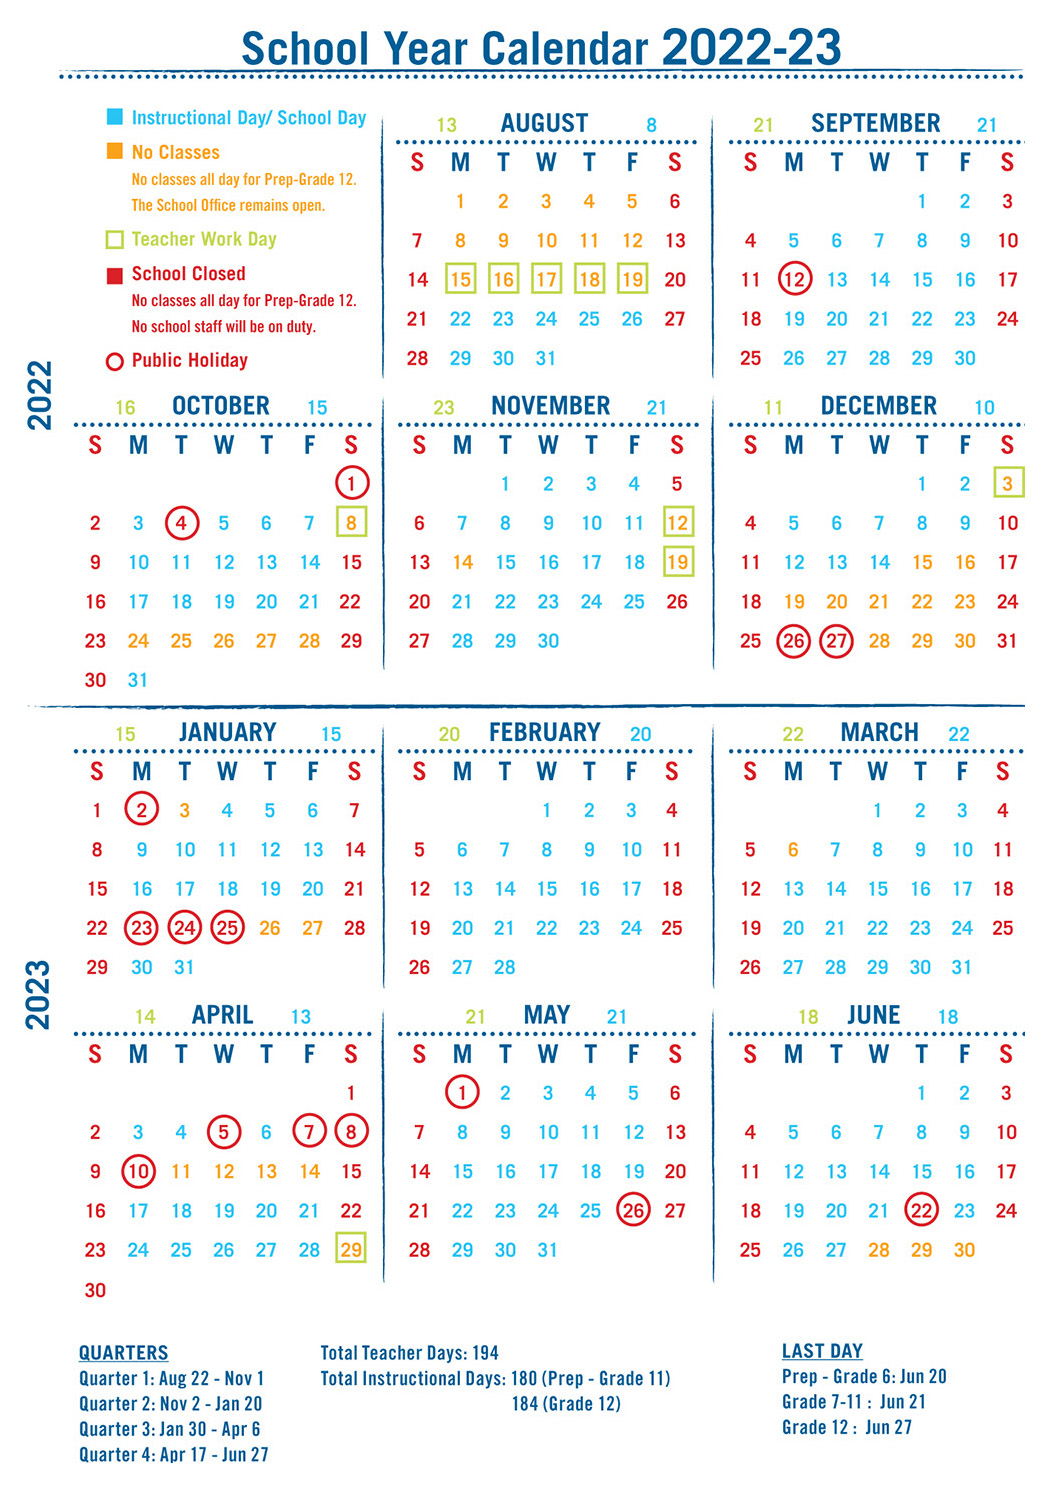 school-year-calendar-christian-alliance-international-school-of-hong-kong